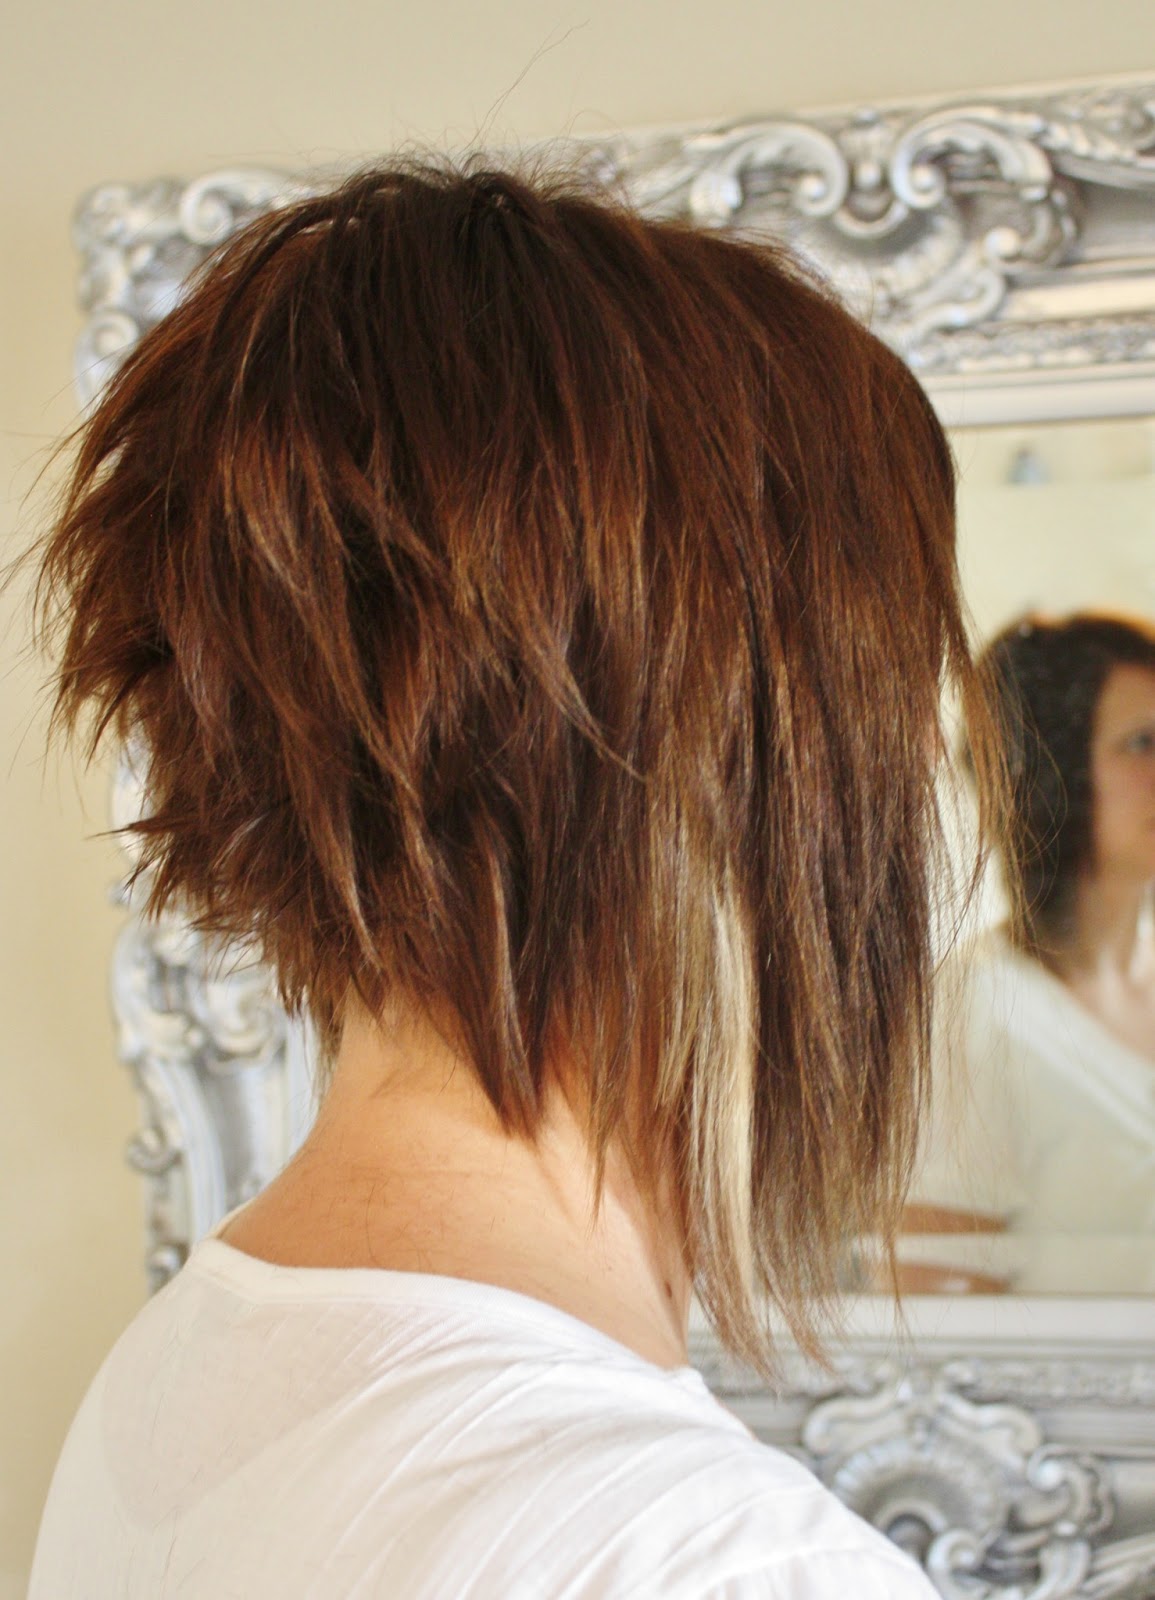 A Line Cut Hair